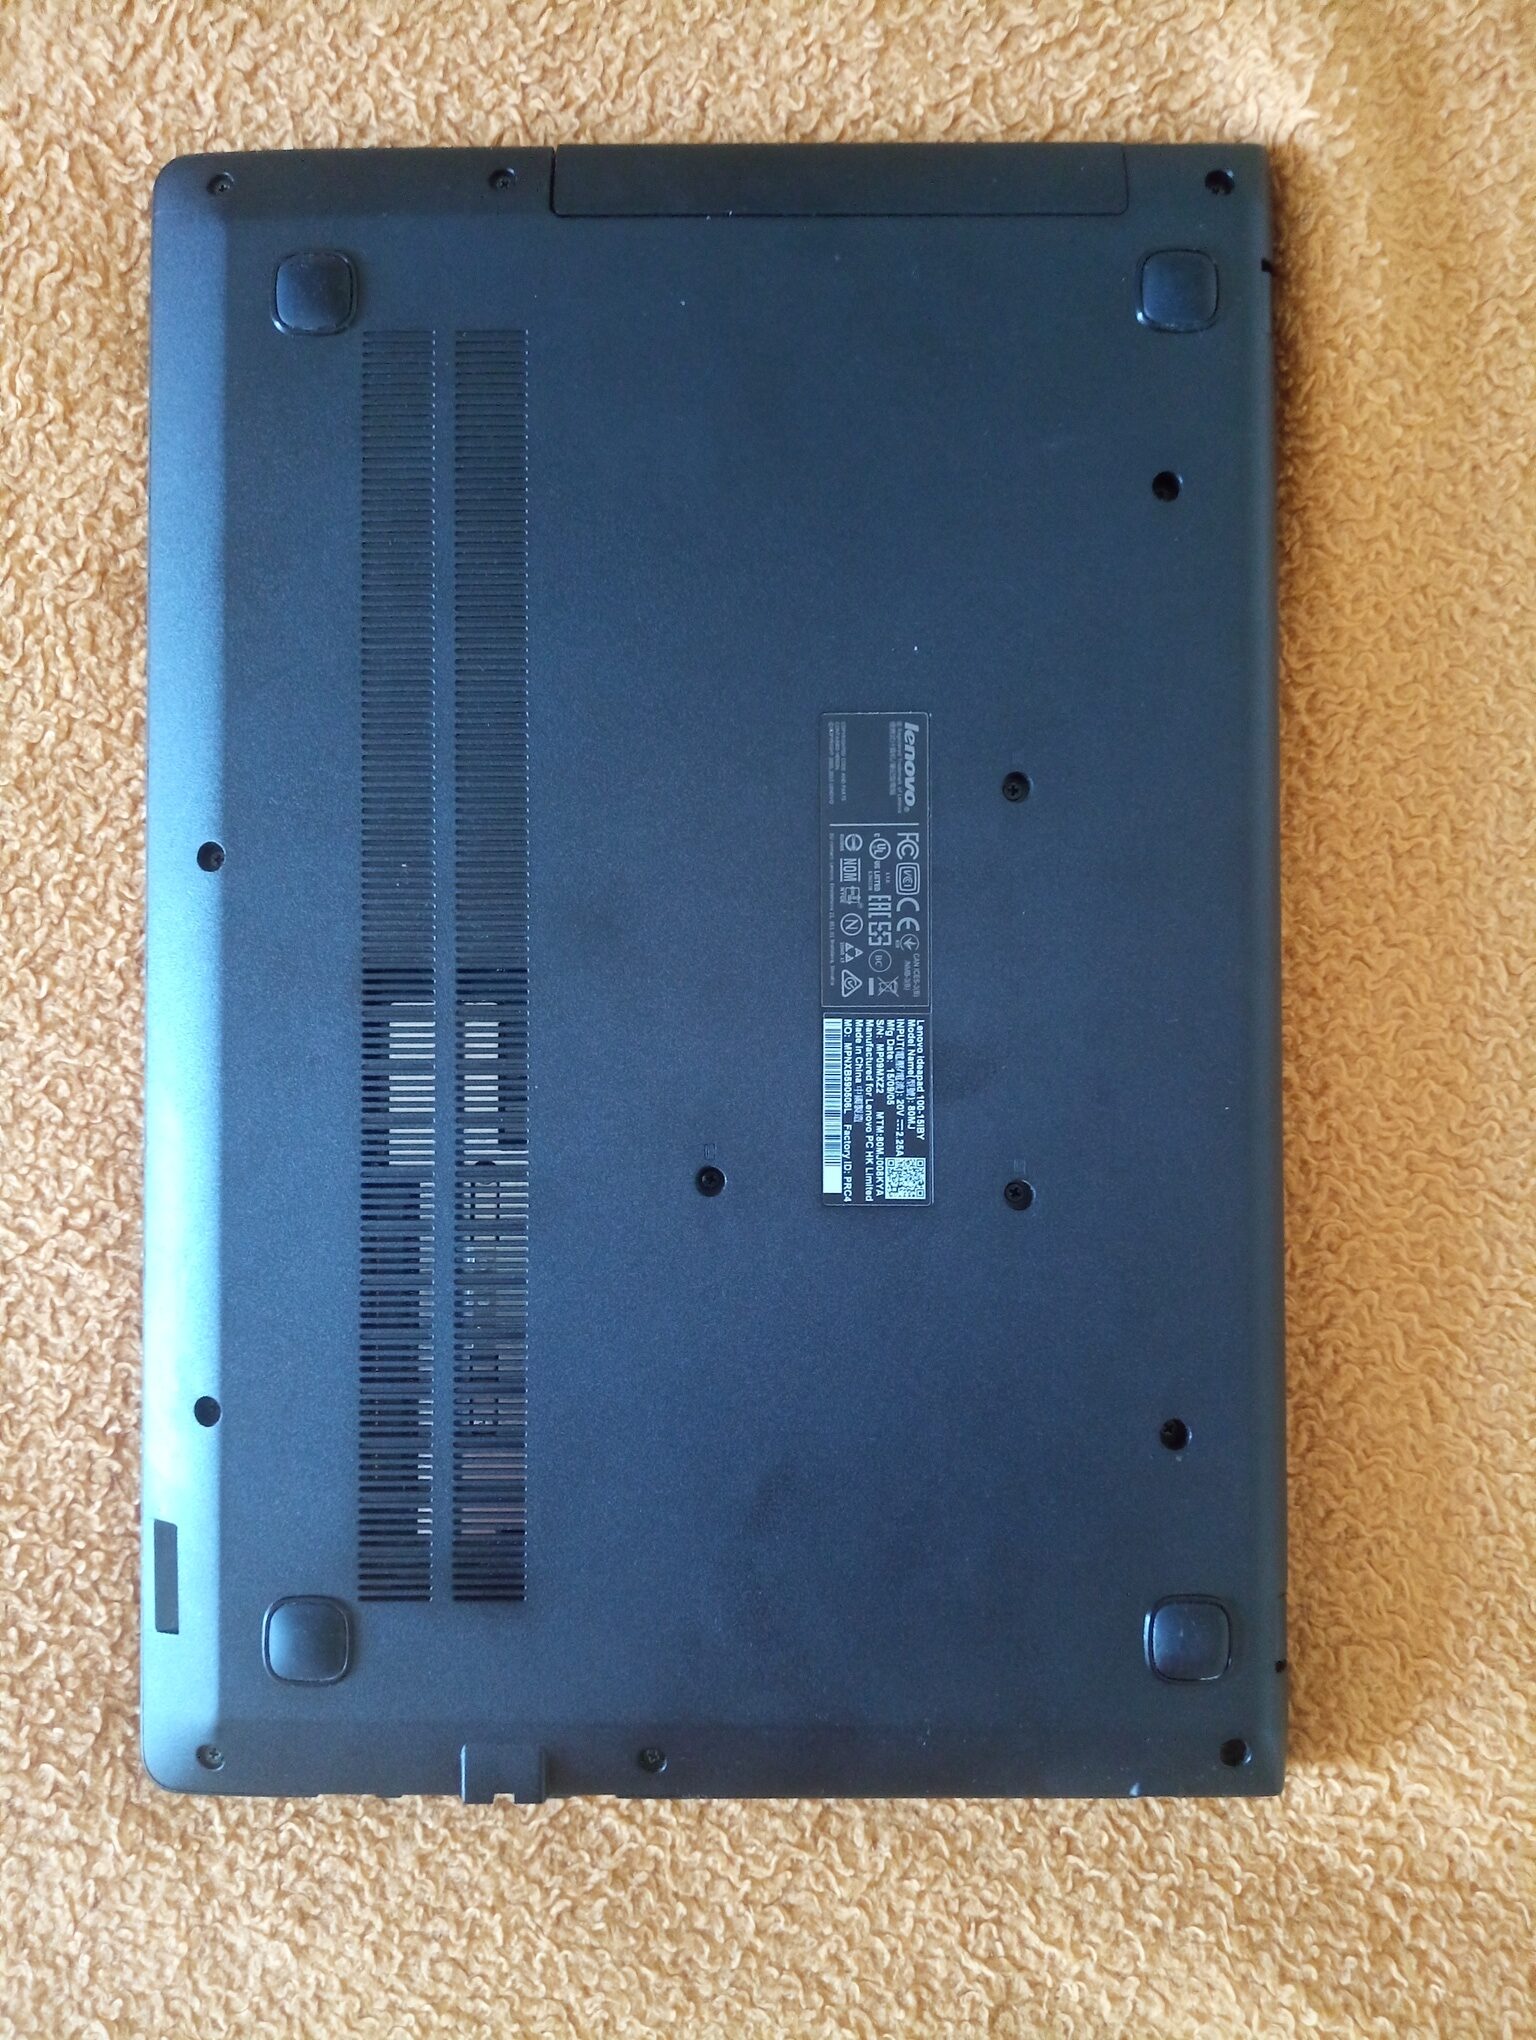 Prodajem polovni Lenovo idepad 100-15IBY u izvanredno ocuvanom stanju. U radnom stanju. Bez ikakvih hardverskih ostecenja.